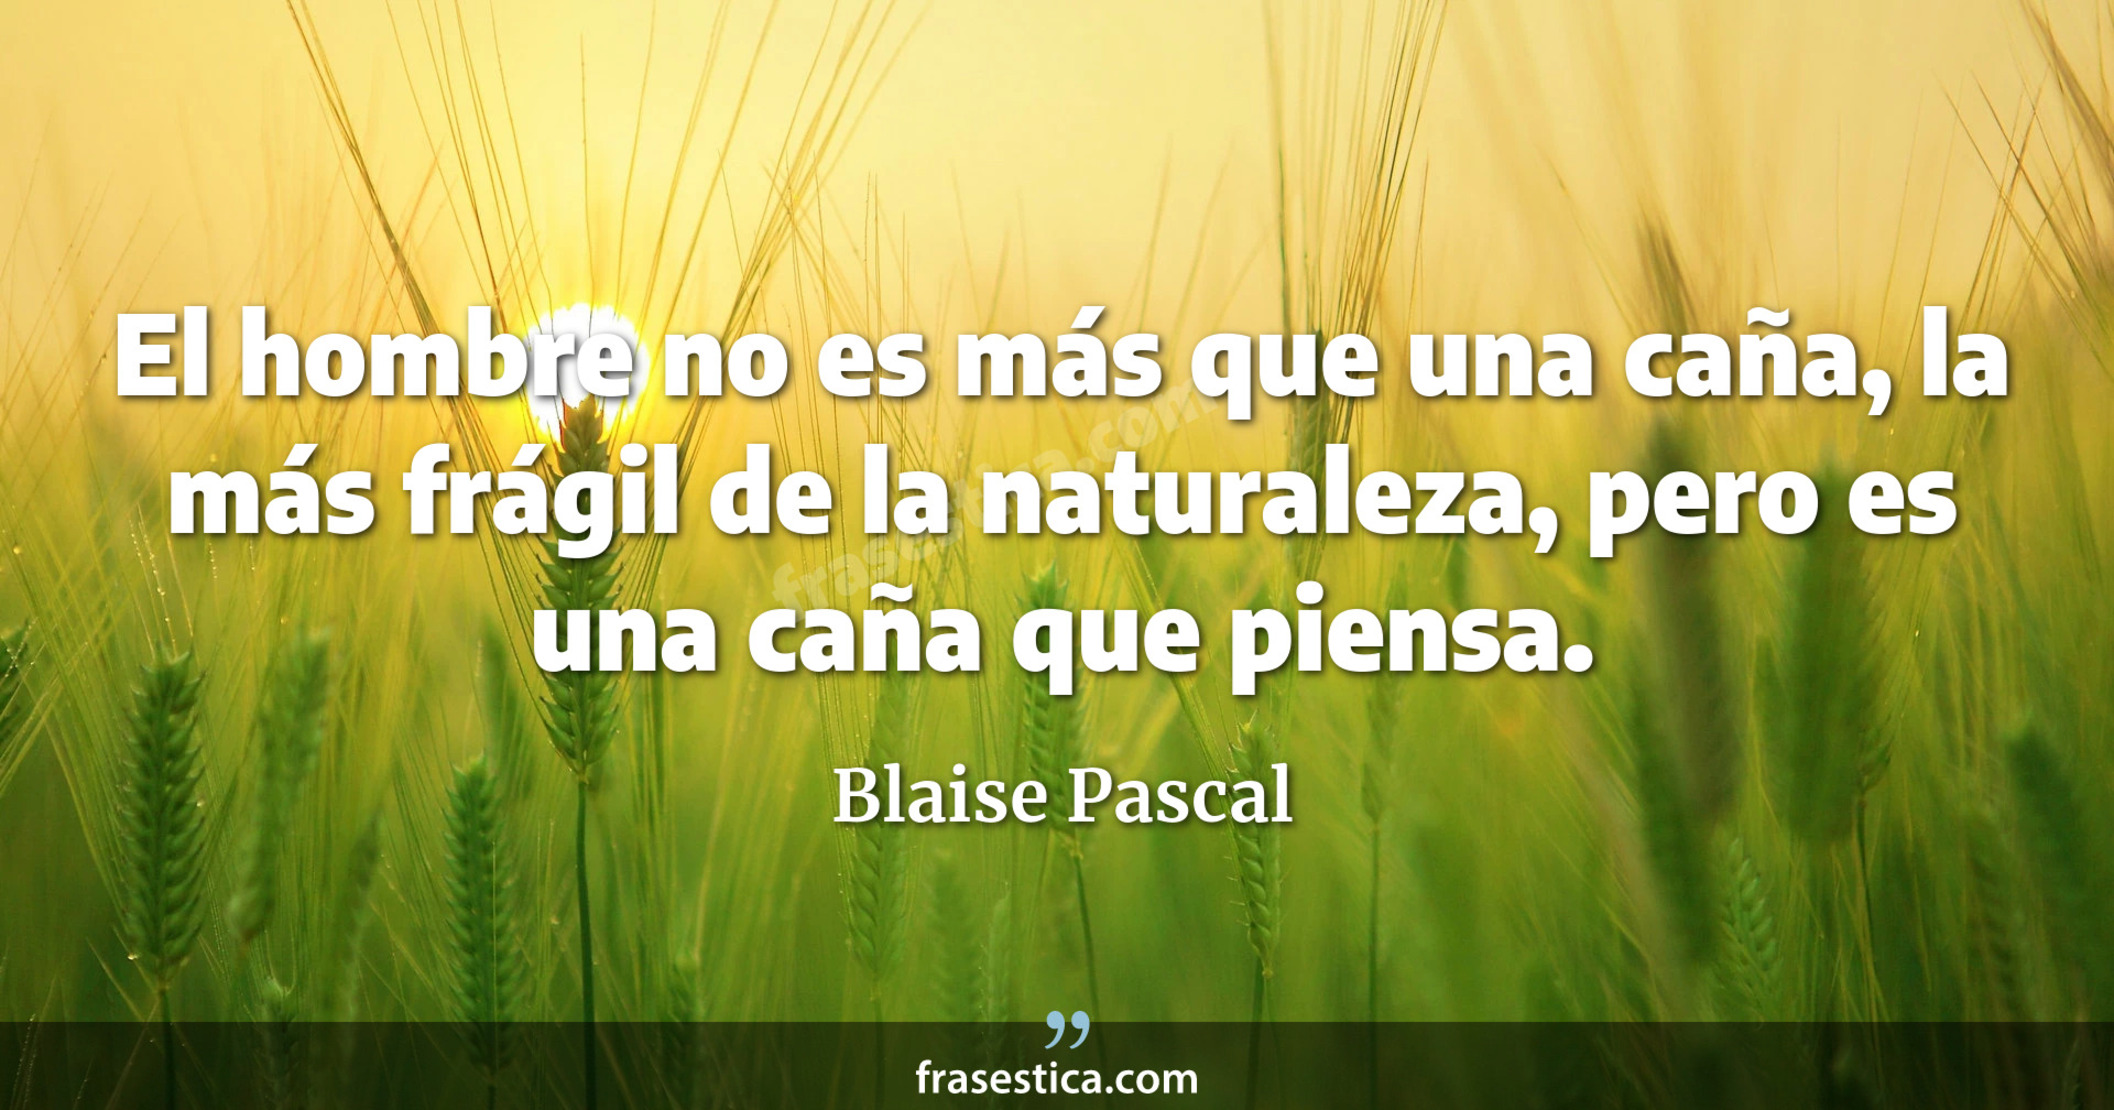 El hombre no es más que una caña, la más frágil de la naturaleza, pero es una caña que piensa. - Blaise Pascal